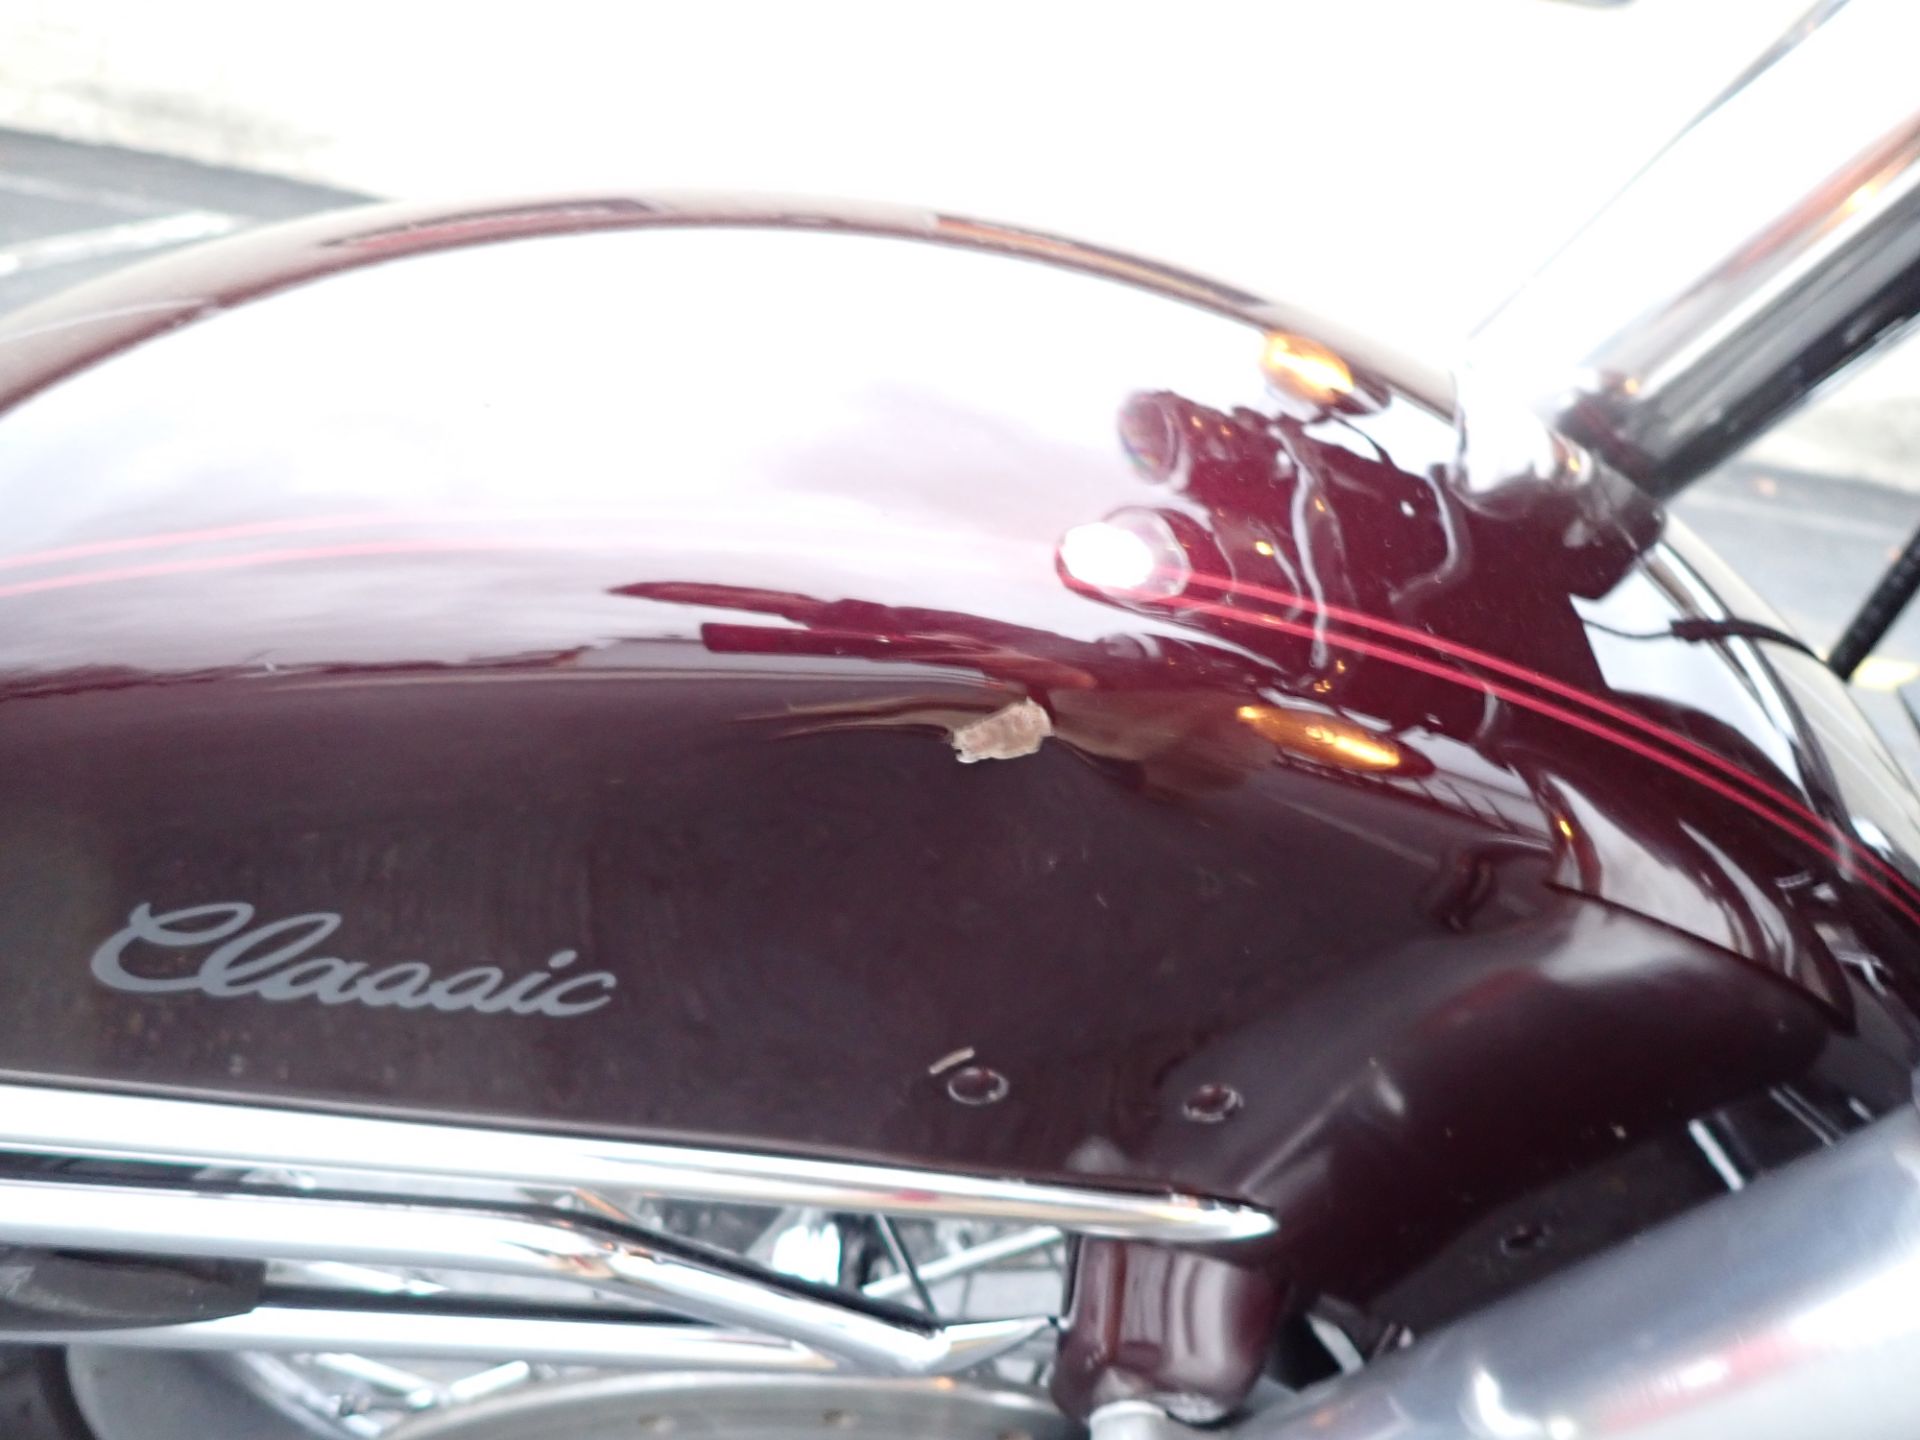 2007 Harley-Davidson Electra Glide® Classic in Massillon, Ohio - Photo 21